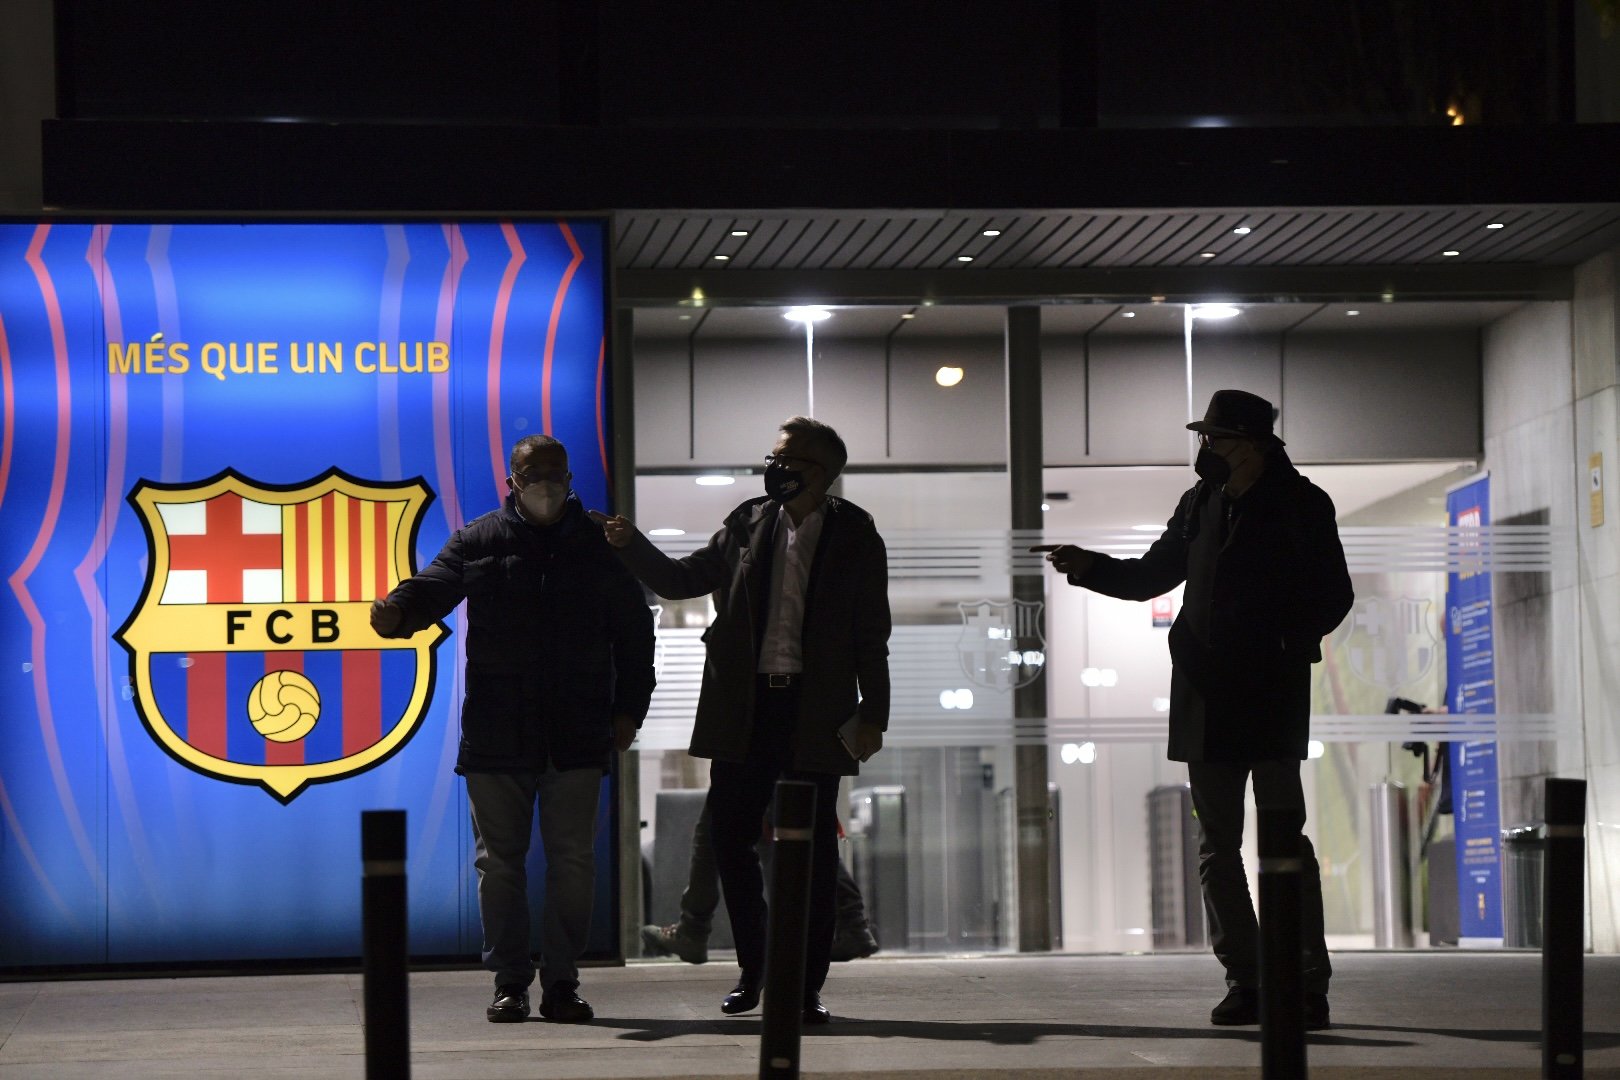 El Barça fa autocrítica i titlla d'"obsolet" el seu procés electoral